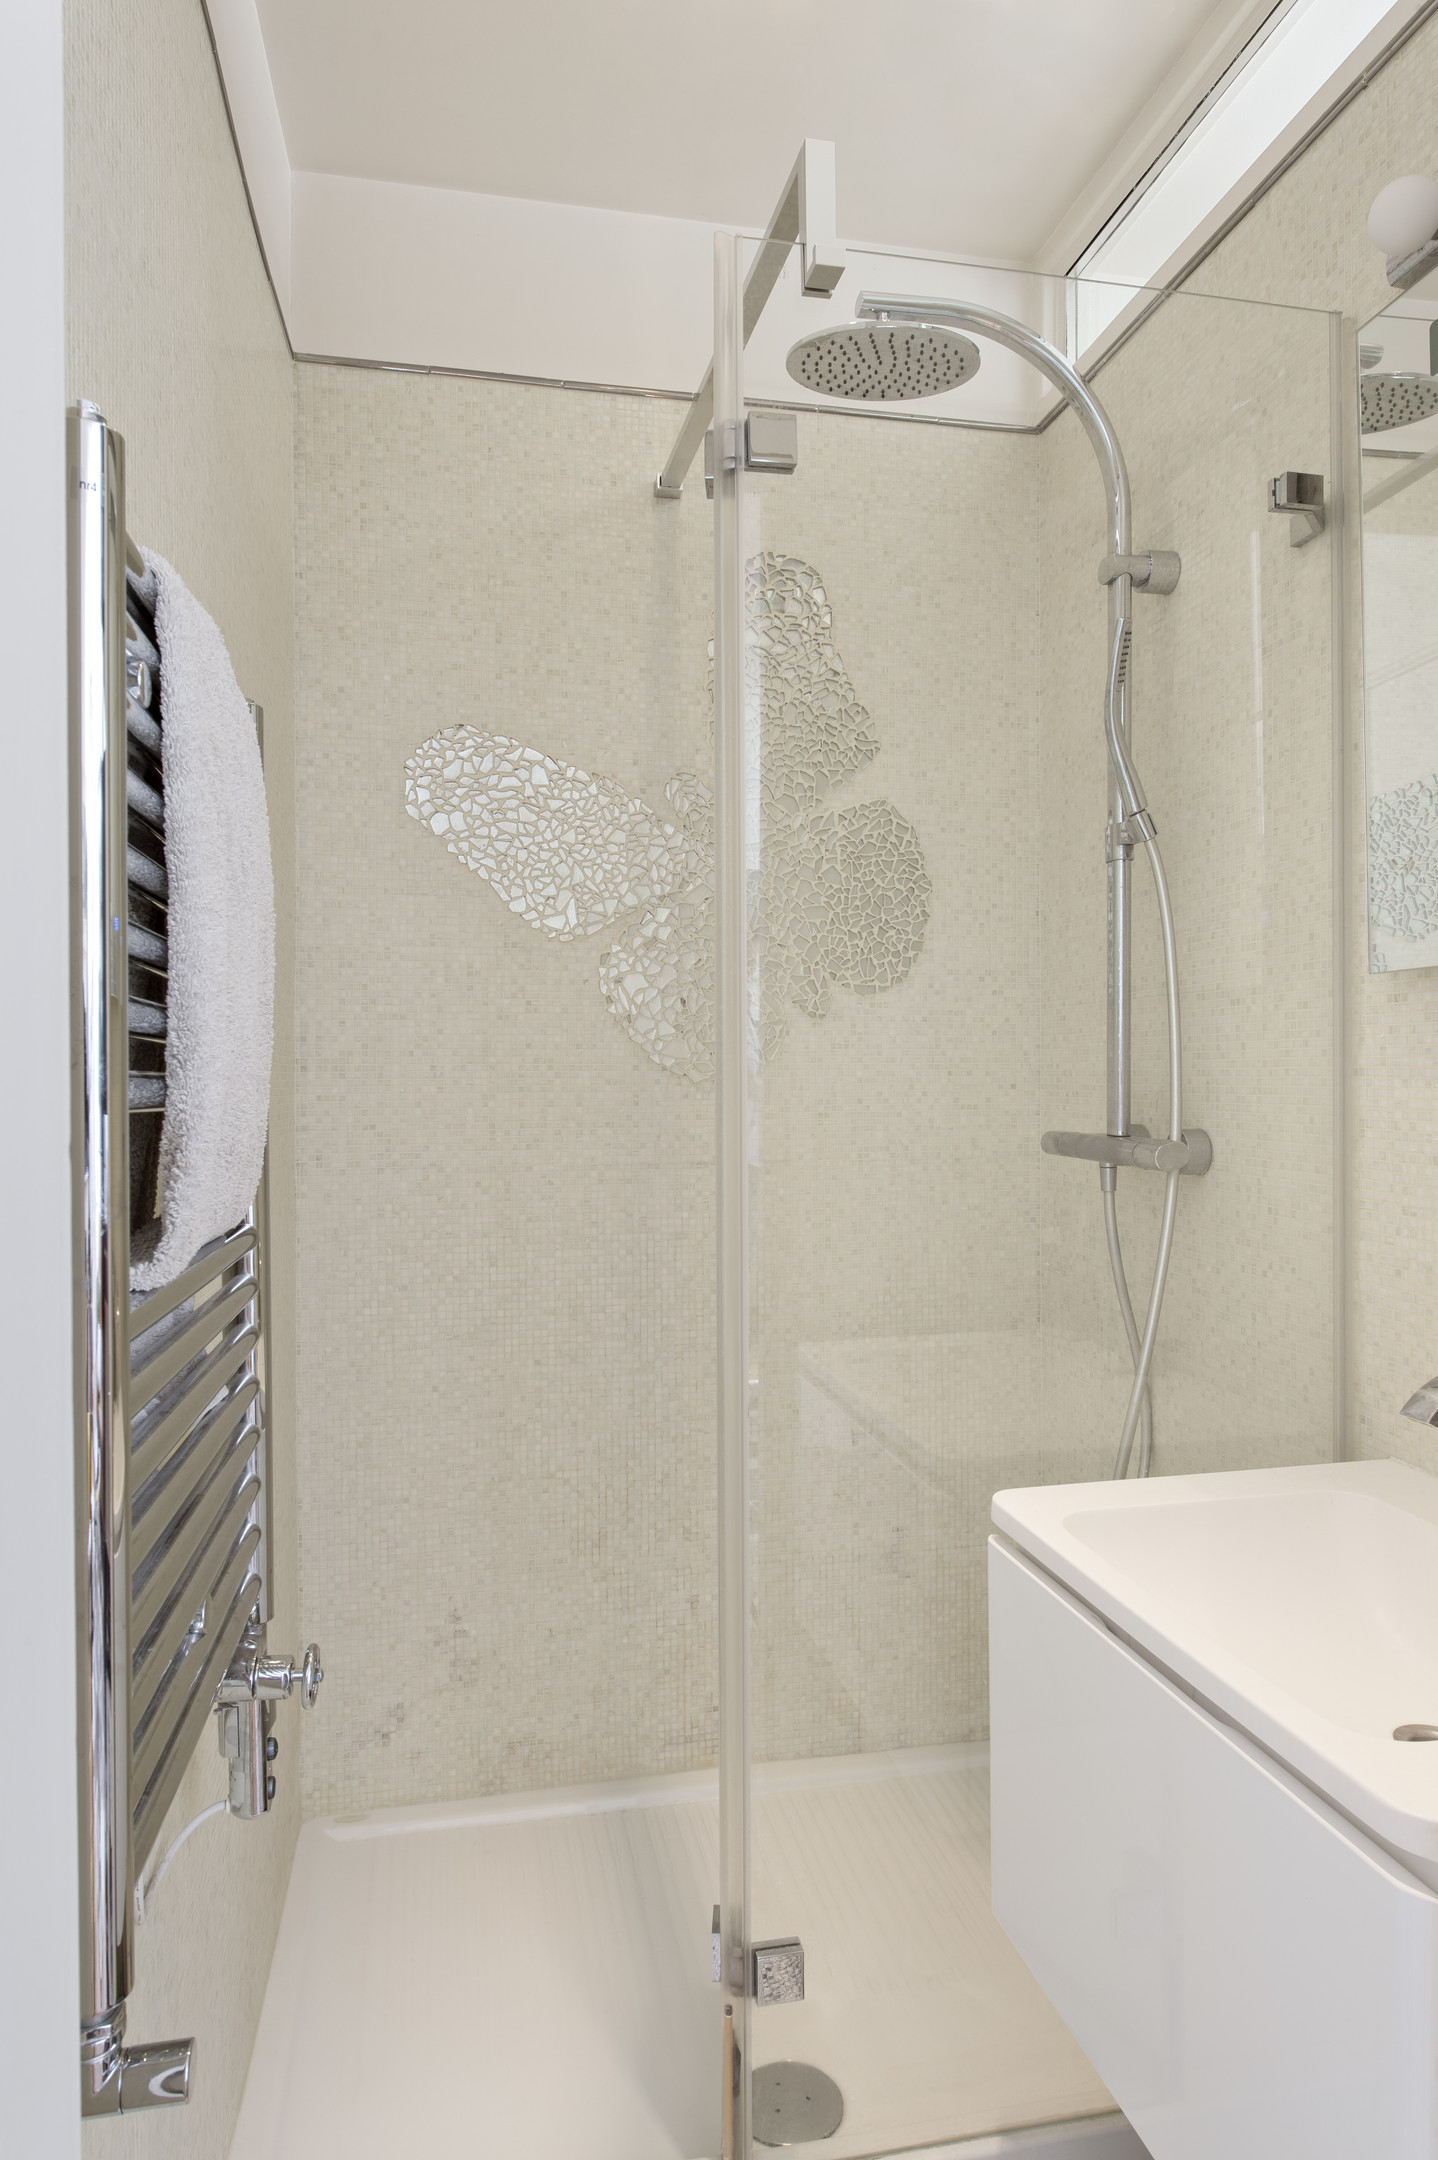 Phòng tắm với buồng tắm đứng vòi hoa sen được phân vùng với nhà vệ sinh bằng cửa kính trong suốt. Trên bức tường phòng tắm có một chú bướm làm bằng gốm tráng gương, đây cũng là tác phẩm của “chính chủ” Ilya Sologubovsky.